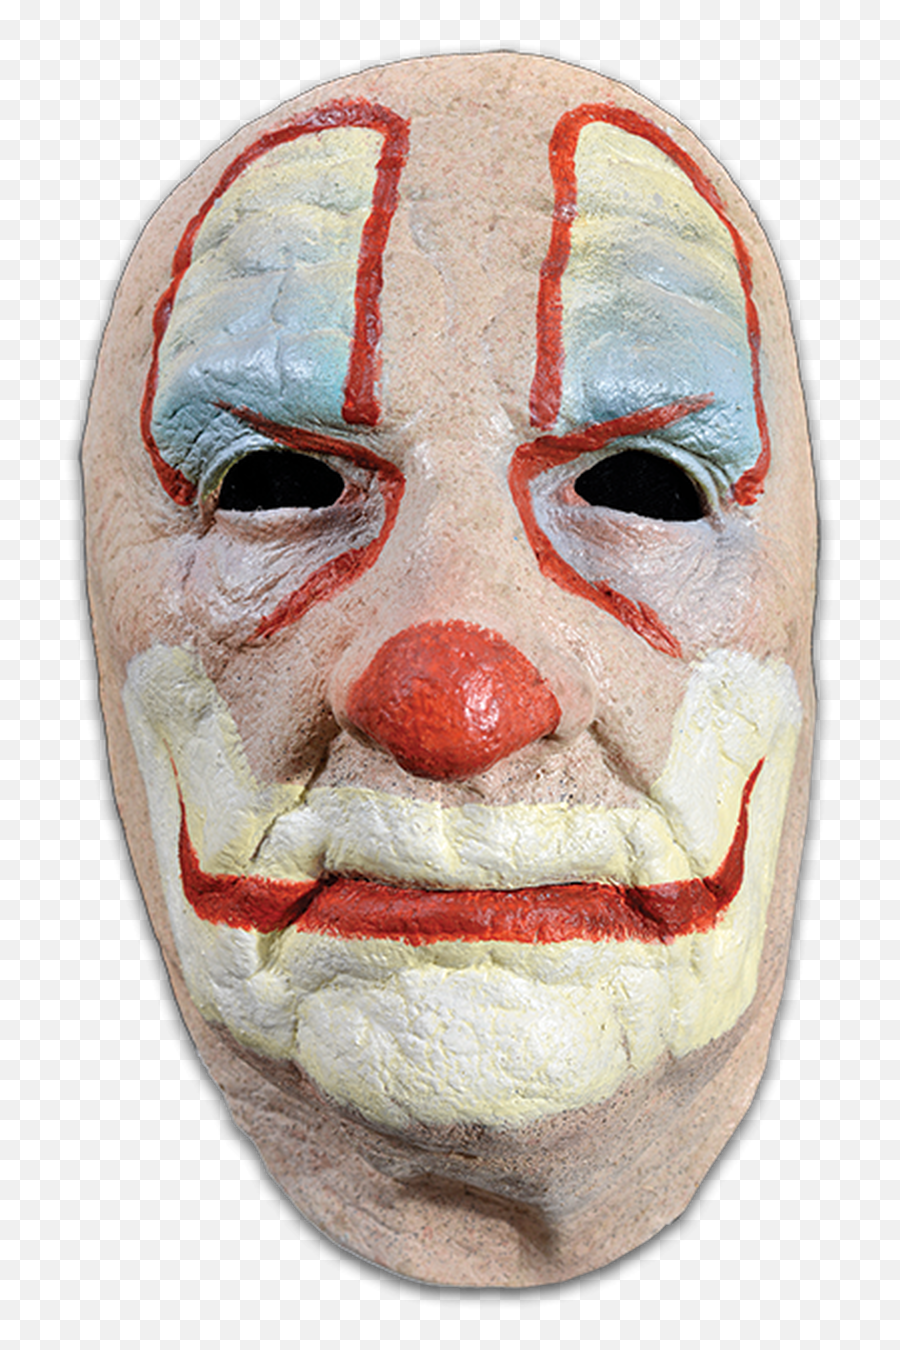 Old Clown Face Mask - Transparent Face Joker Makeup Png,Clown Face Png